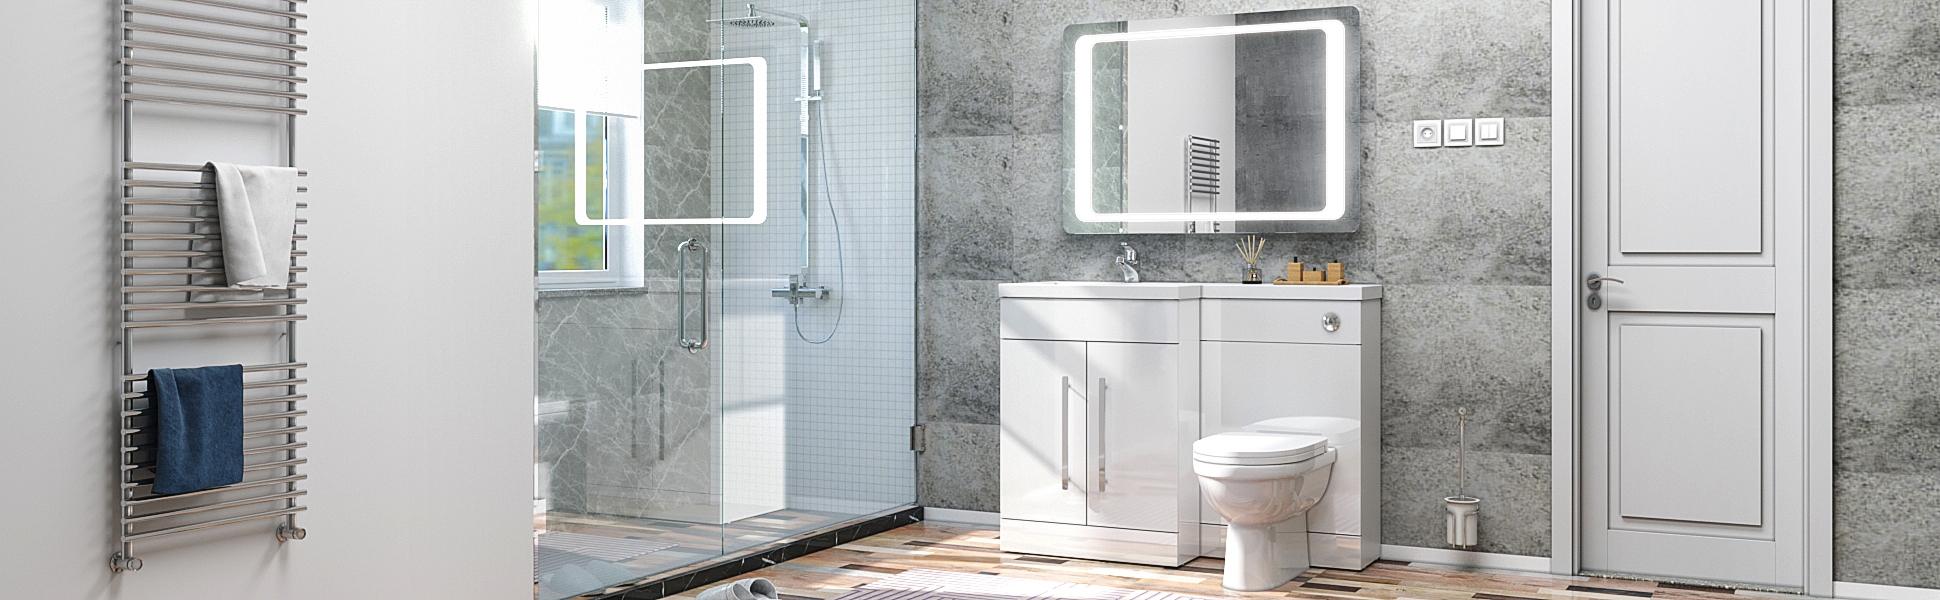 Bathroom Installation Ideas By Elegant Showers 